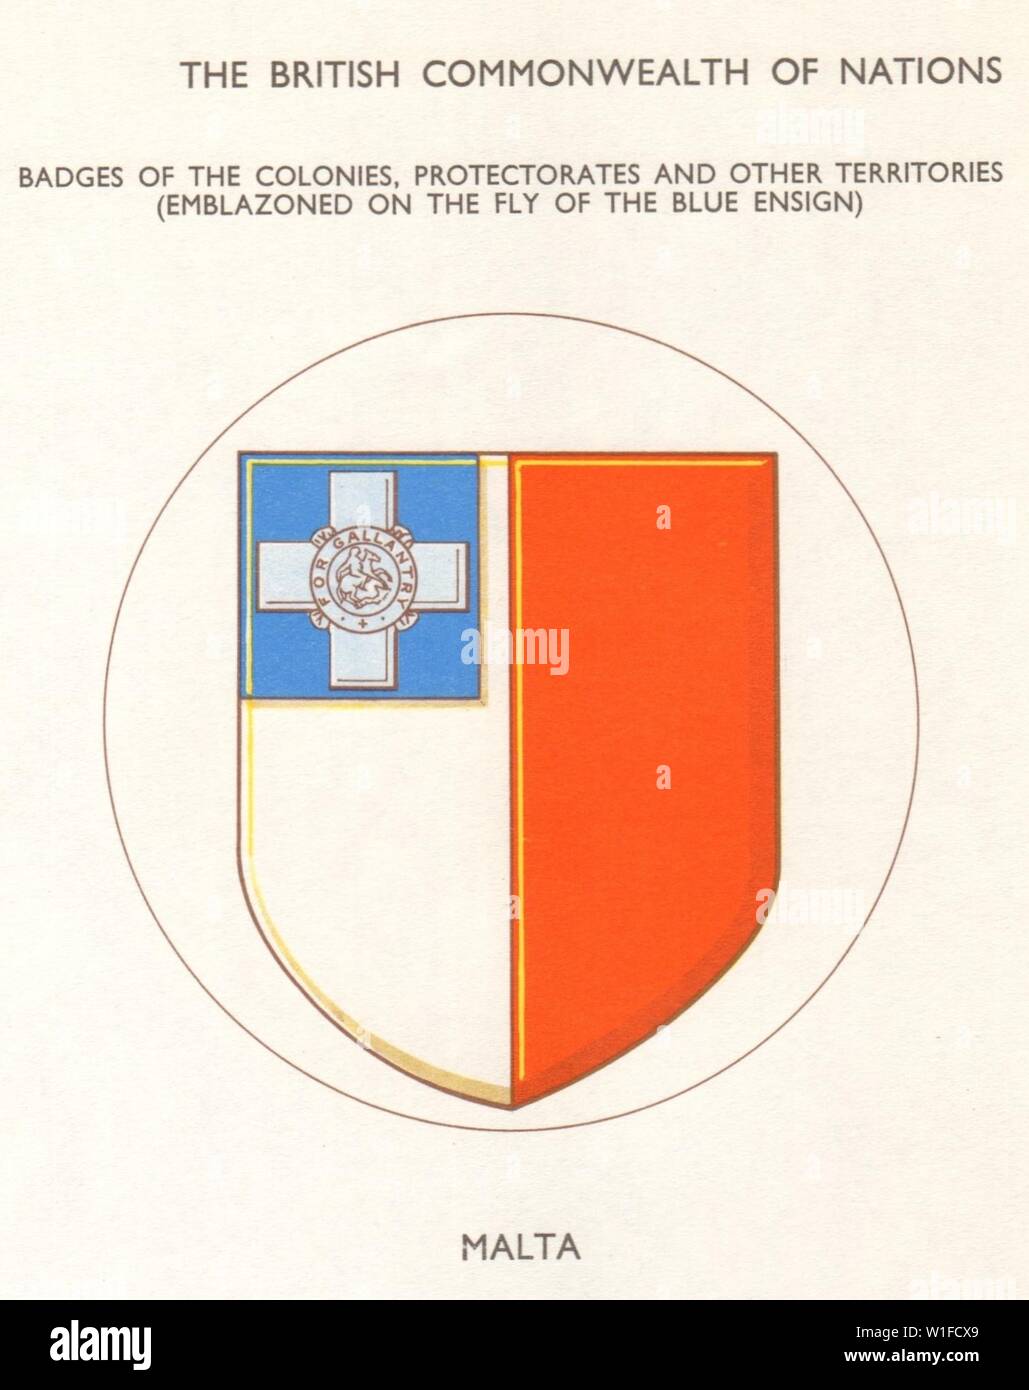 Drapeaux de Malte. Insignes des Colonies, protectorats et autres territoires 1965 Banque D'Images